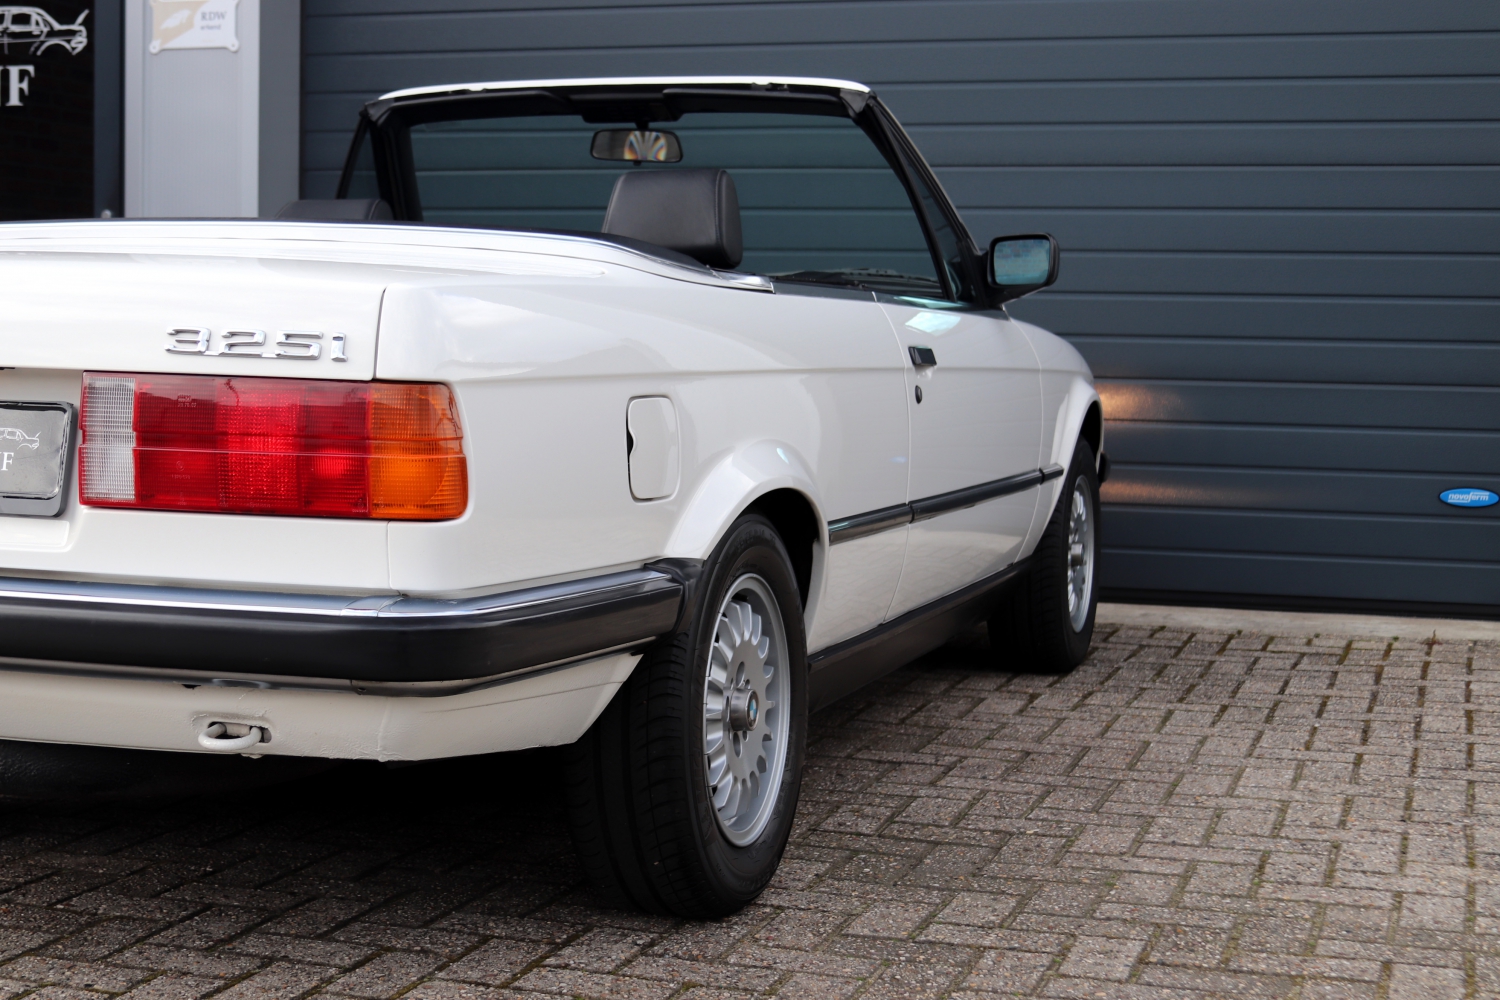 BMW-325i-Cabriolet-E30-1986-65RRT2-037.JPG